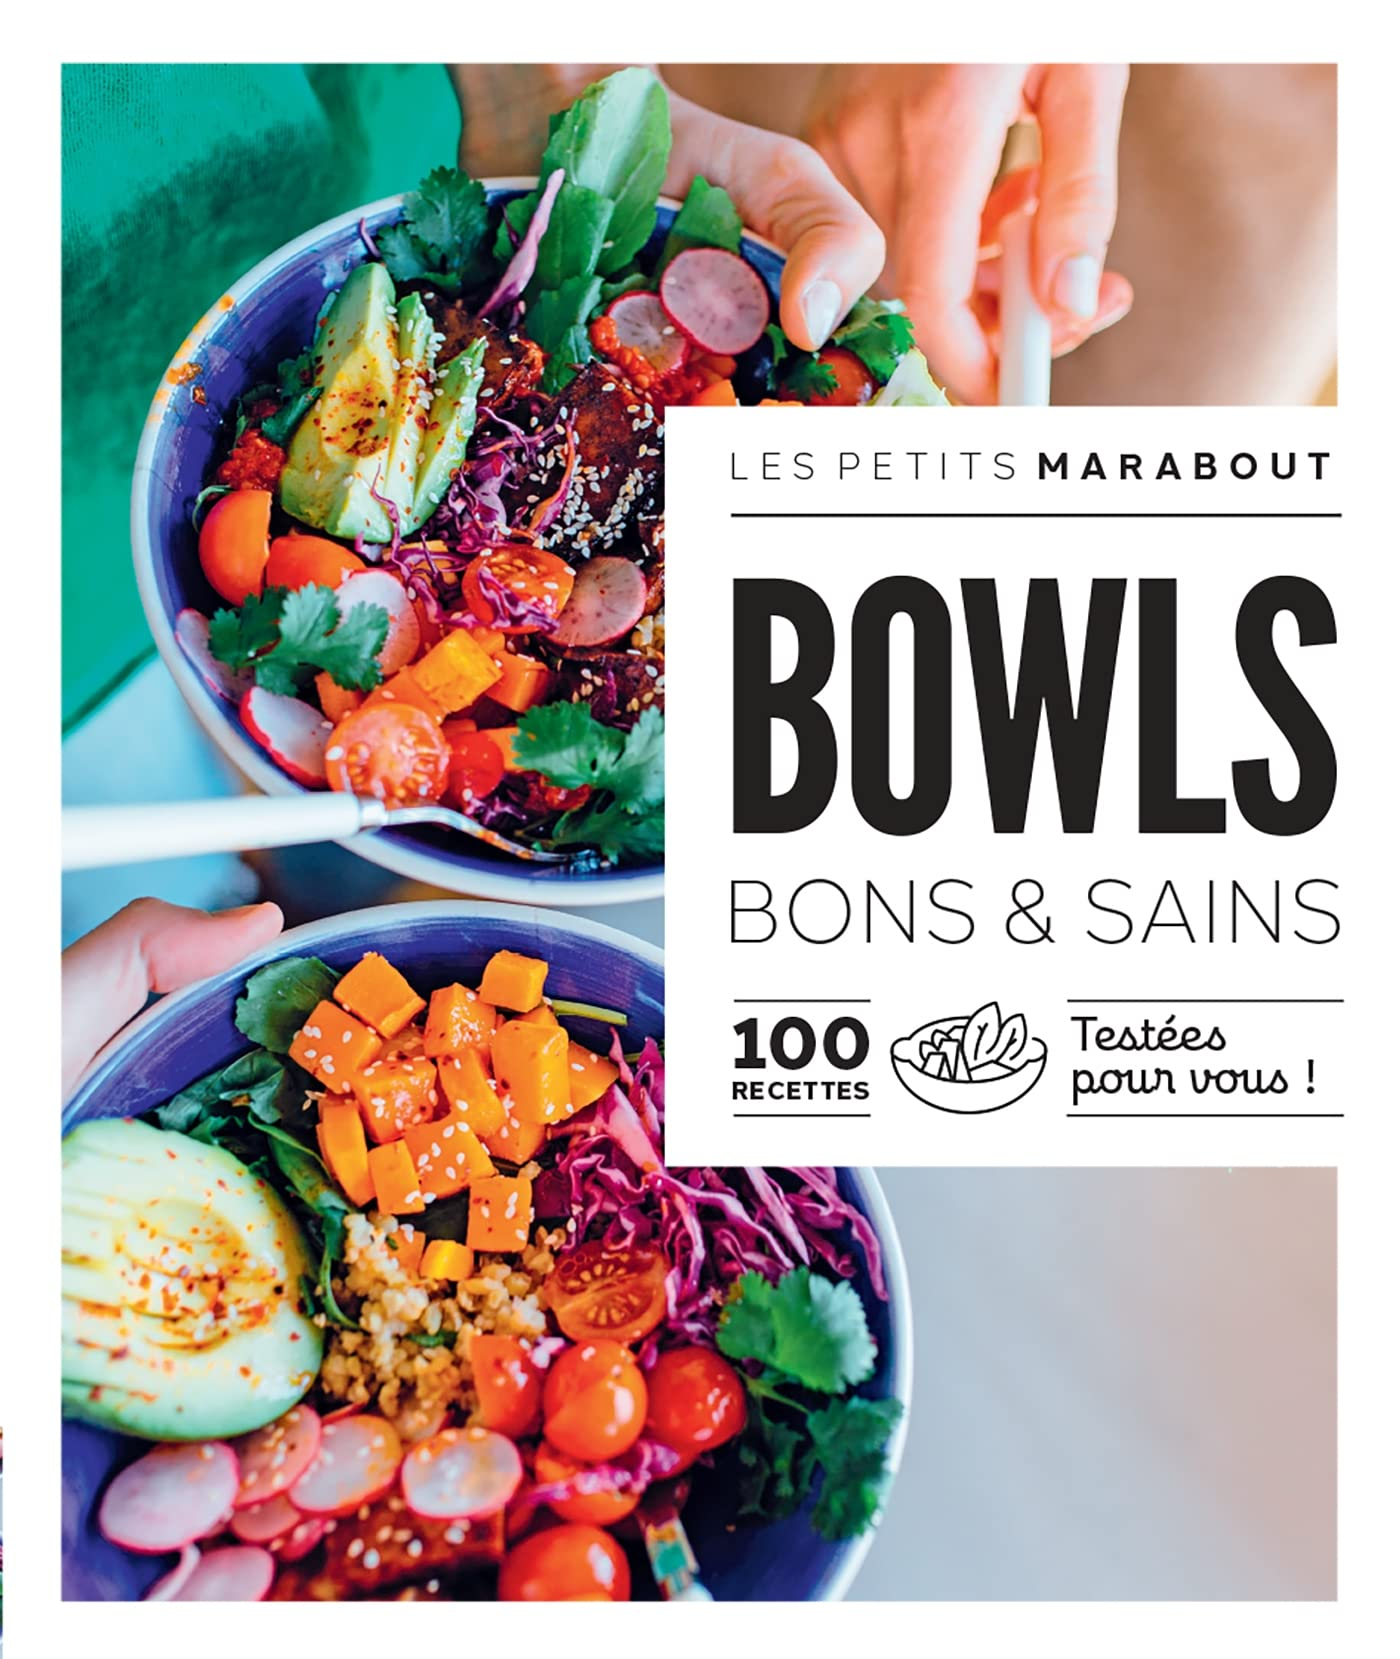 Bowls bons & sains : 100 recettes testées pour vous !